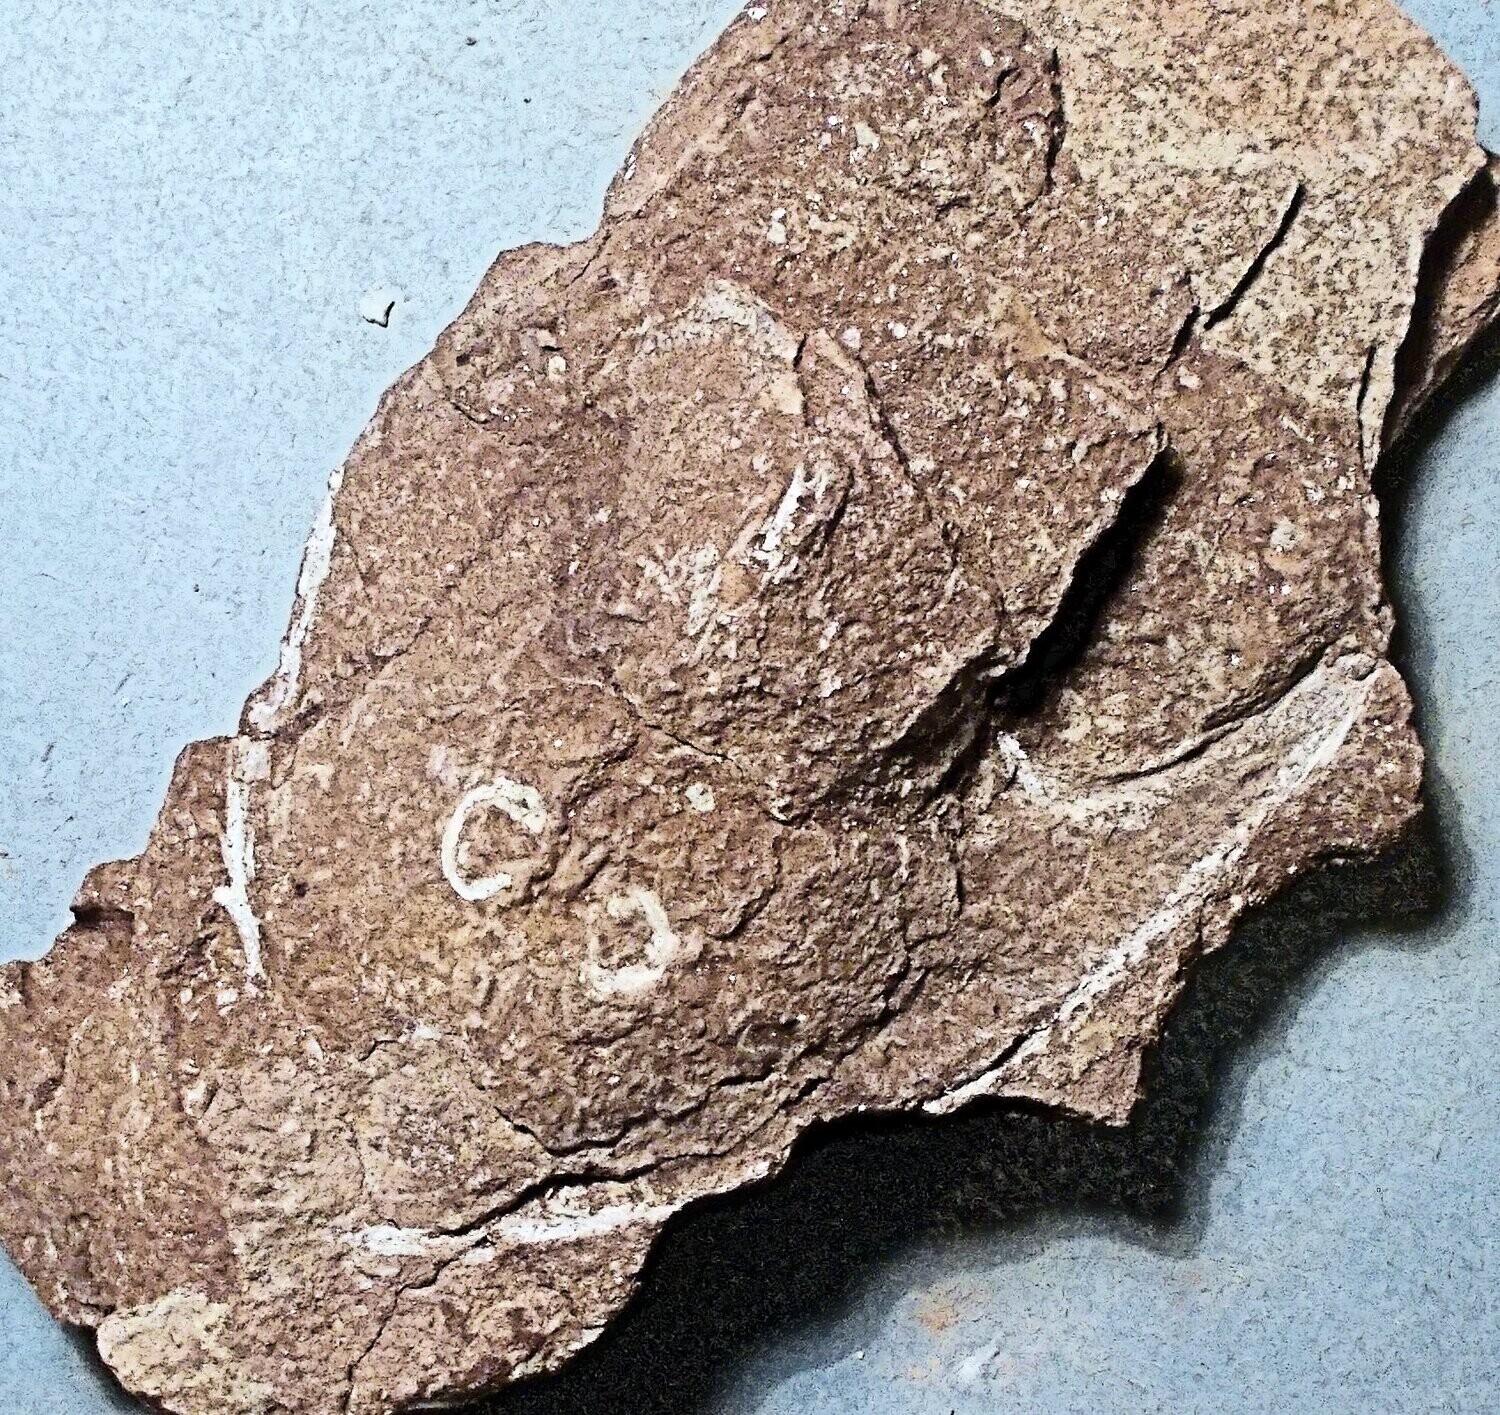 Fine 8cm headshield of Stensiopelta pustulata, with 8cm Victoriaspis headshield: armoured fish; Lower Devonian of Ukraine